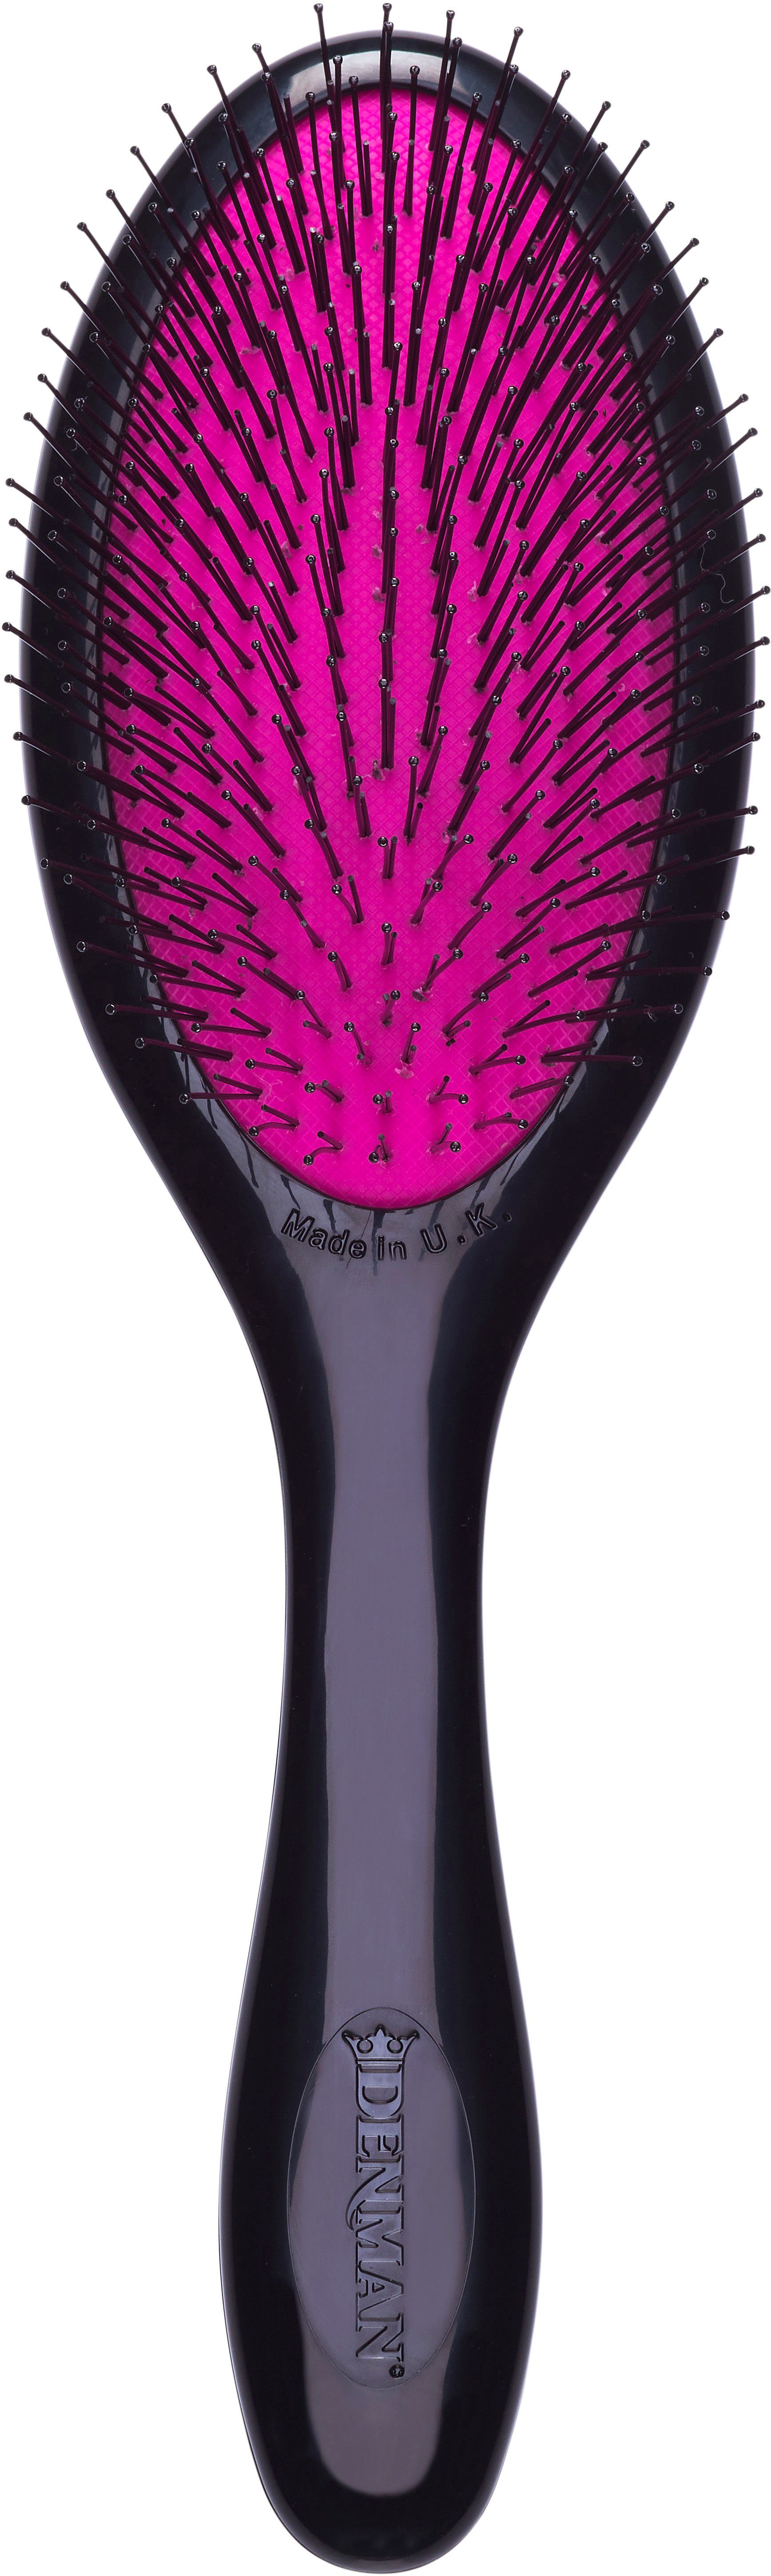 DENMAN Haarbürste D93M Tangle Tamer Gentle, Entwirrungsbürste speziell für feines Haar und Kinderhaar schwarz-pink | Haarbürsten